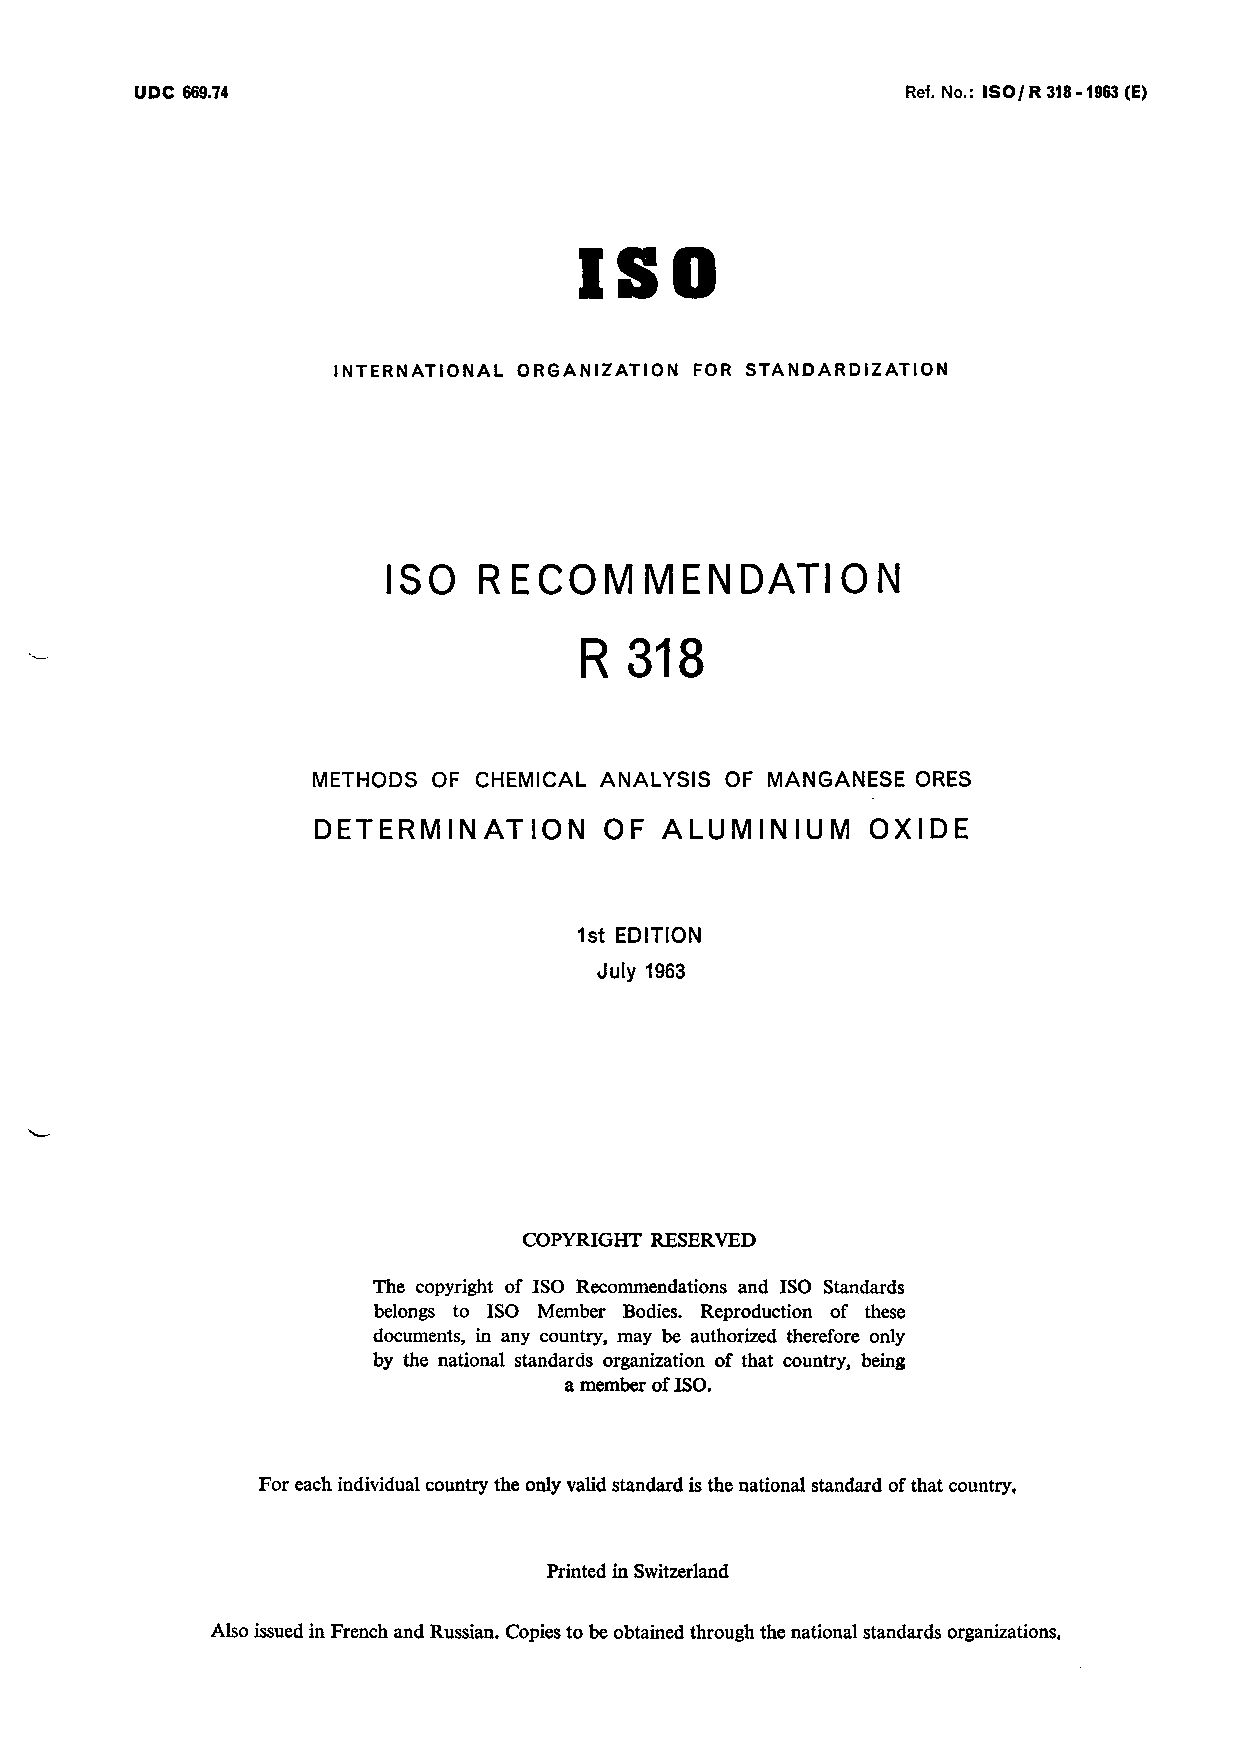 ISO/R 318-1963